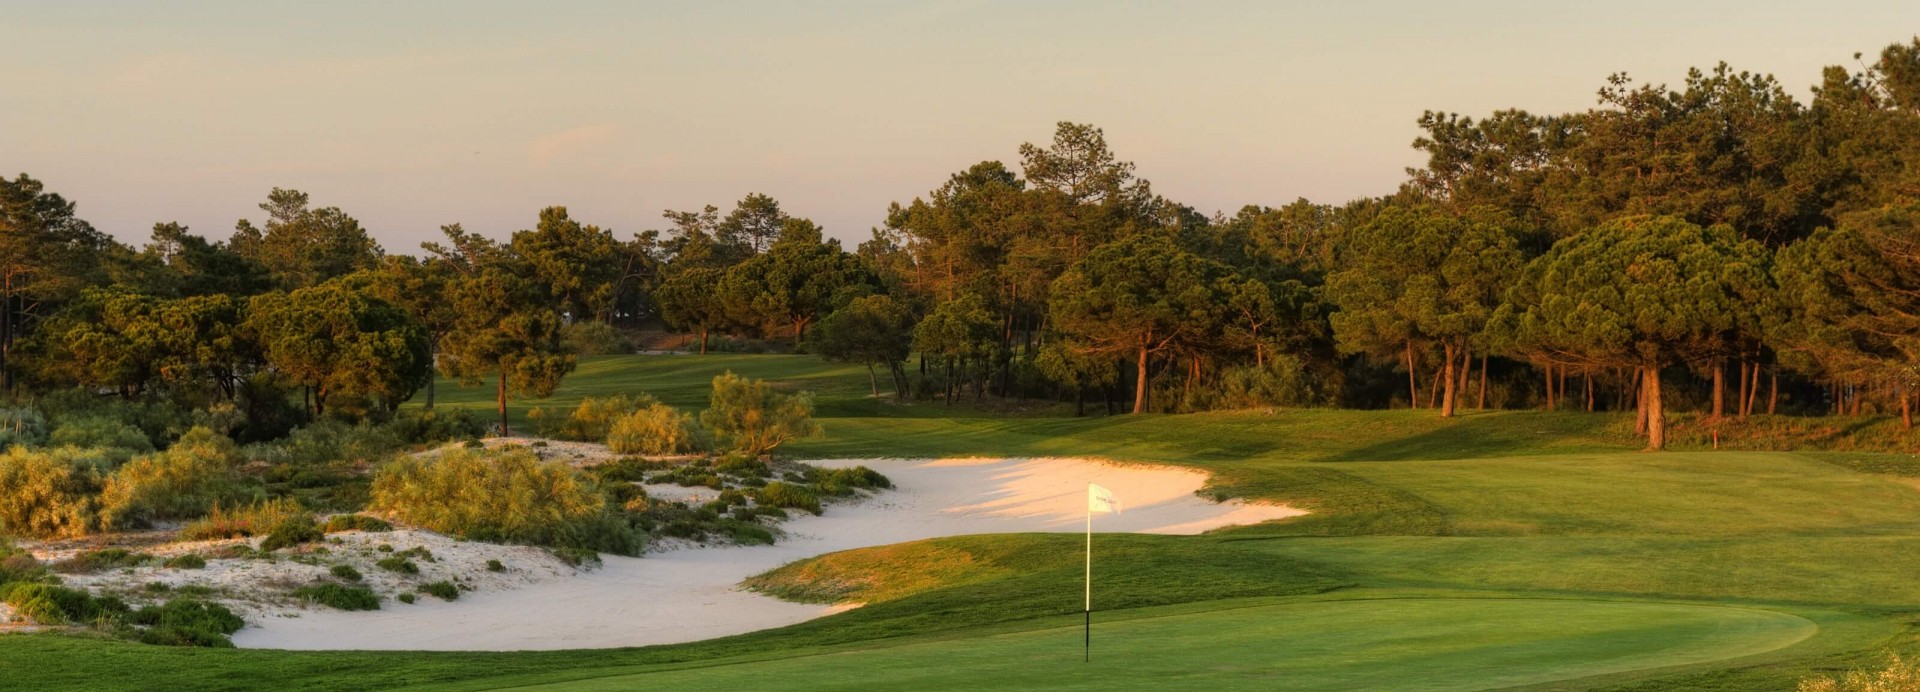 Tróia Golf  | Golfové zájezdy, golfová dovolená, luxusní golf